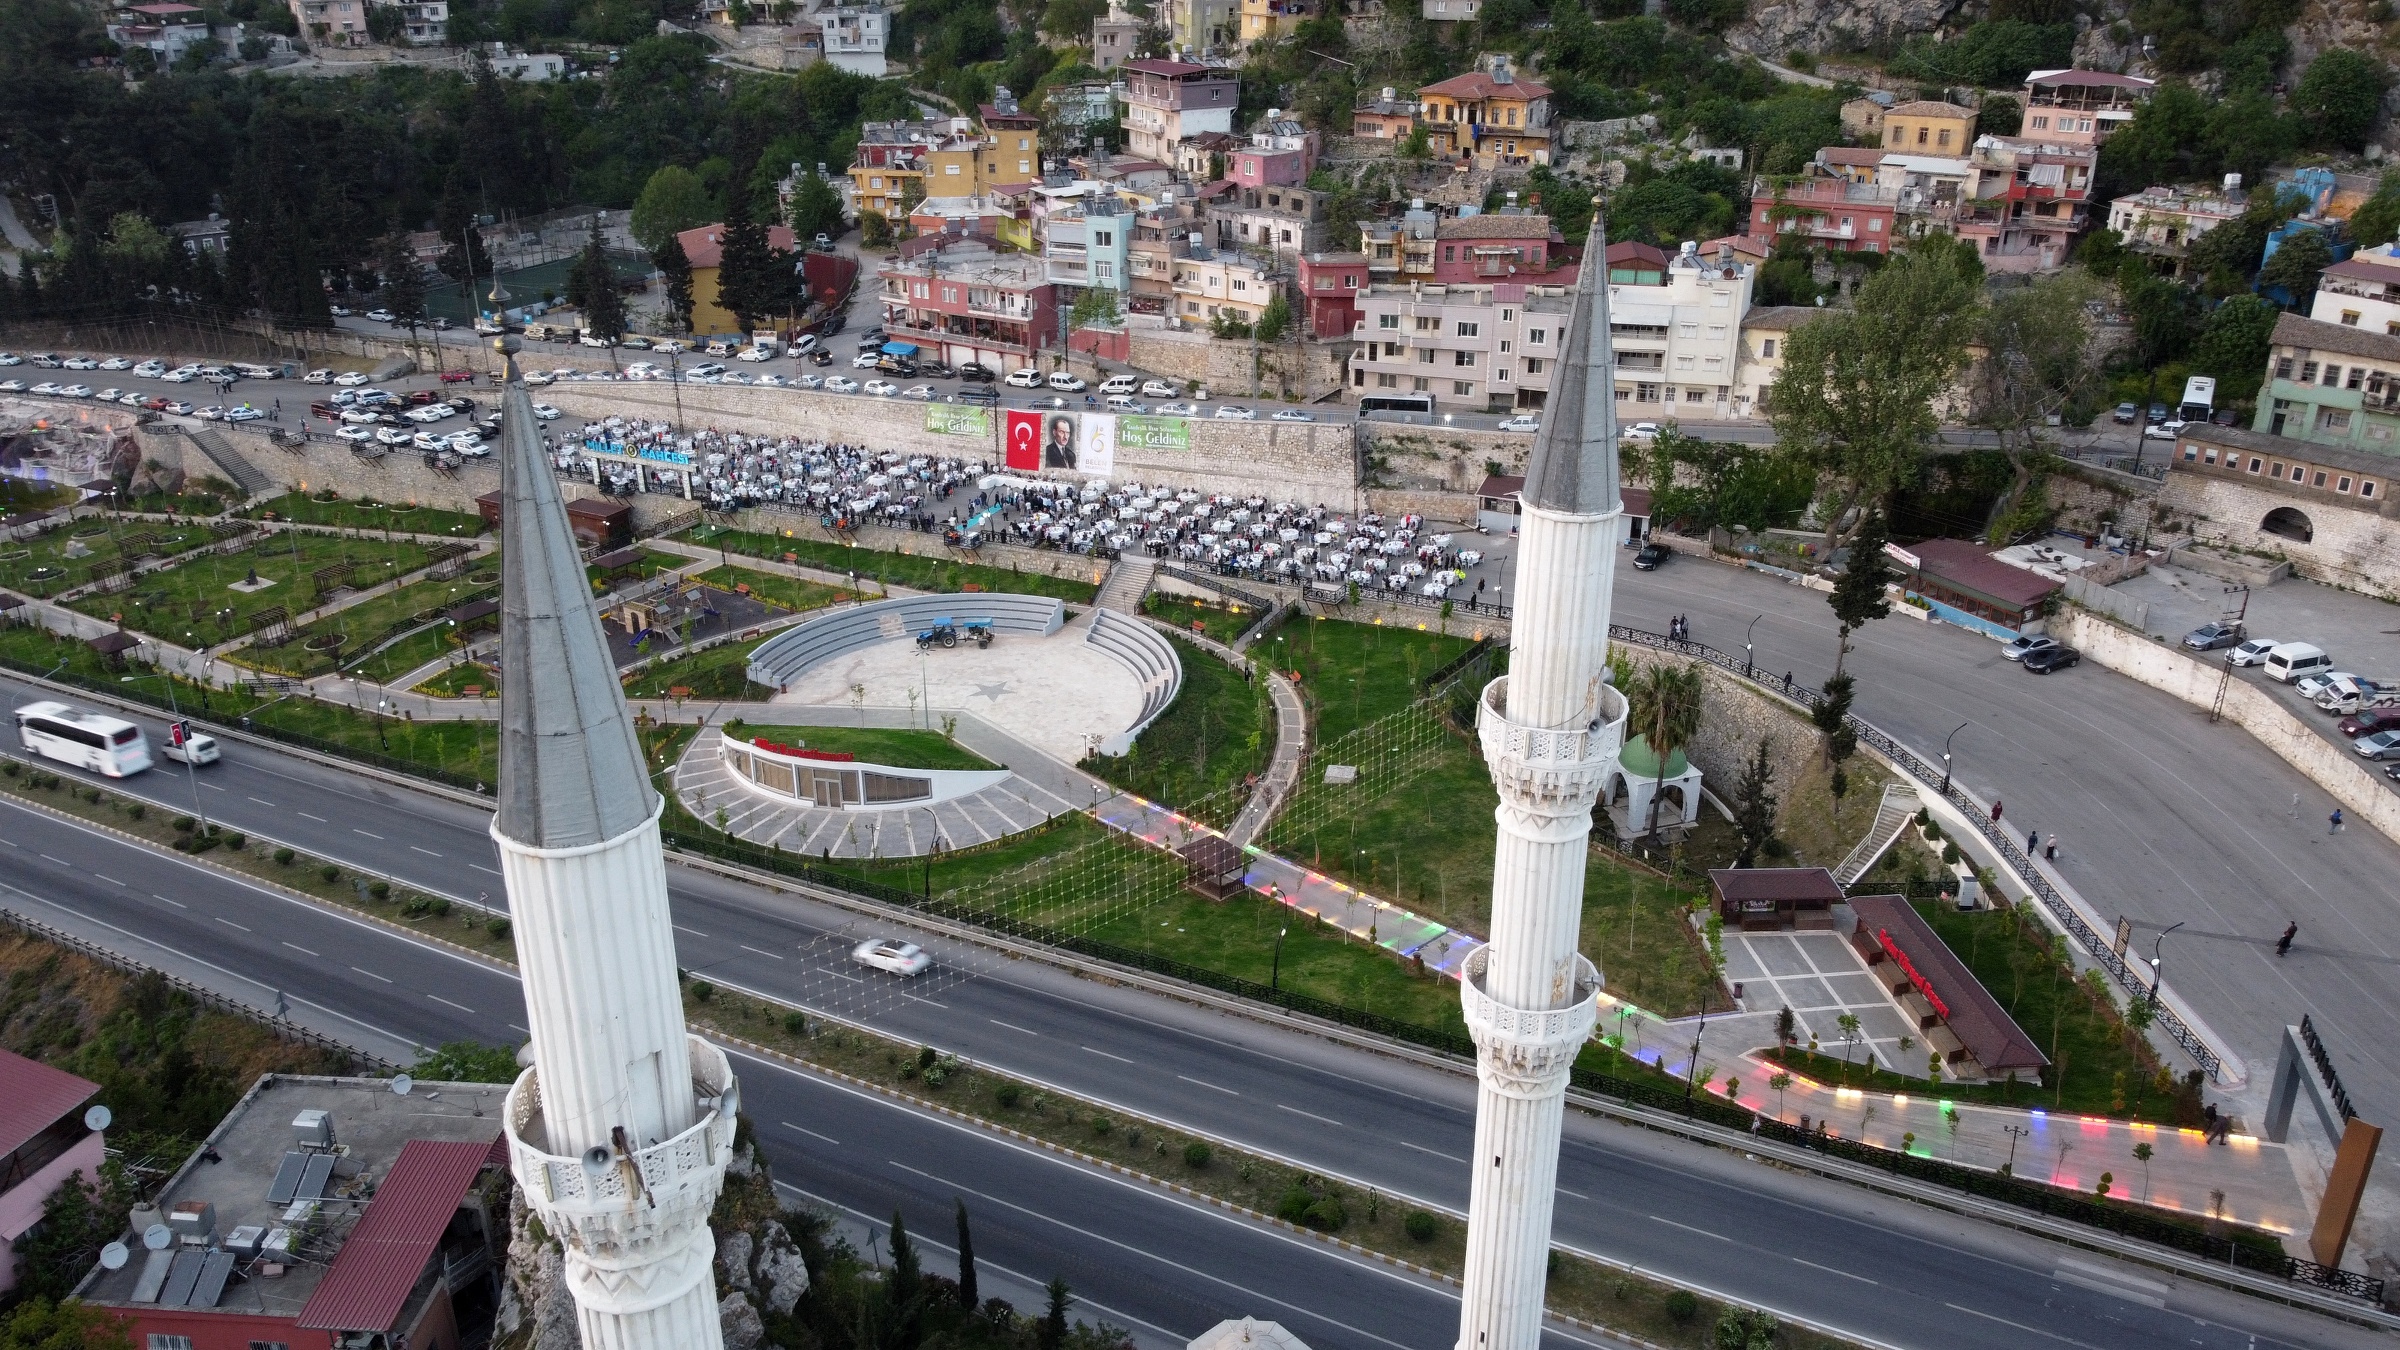 Belen Belediyesi, Ramazan ayının manevi atmosferini "Belen Kardeşlik İftar Sofrası" ile taçlandırıyor. 